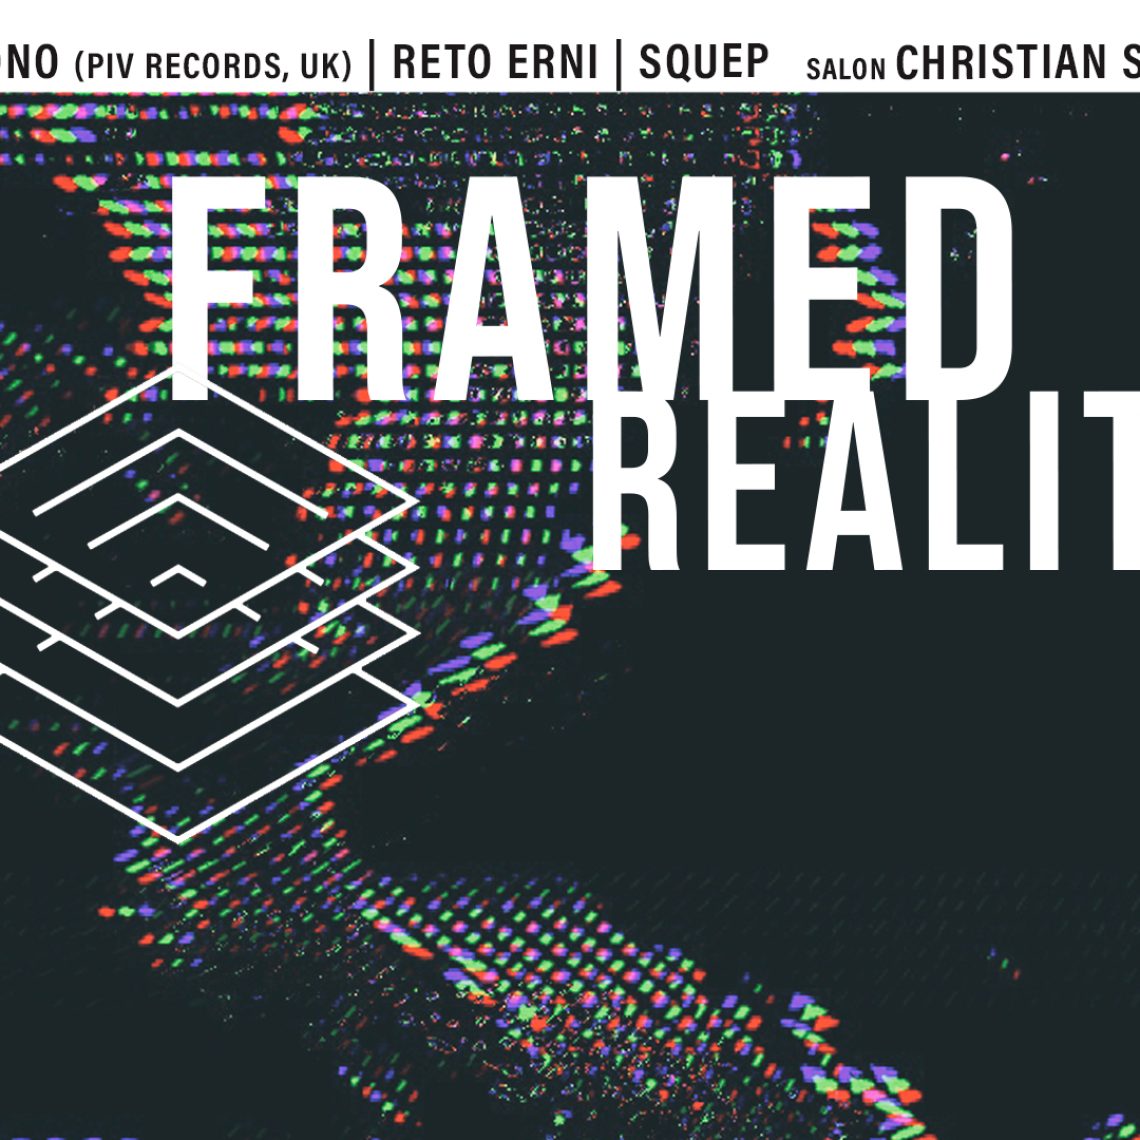 Framed_Realities_Veranstaltung_29.10.2021_2